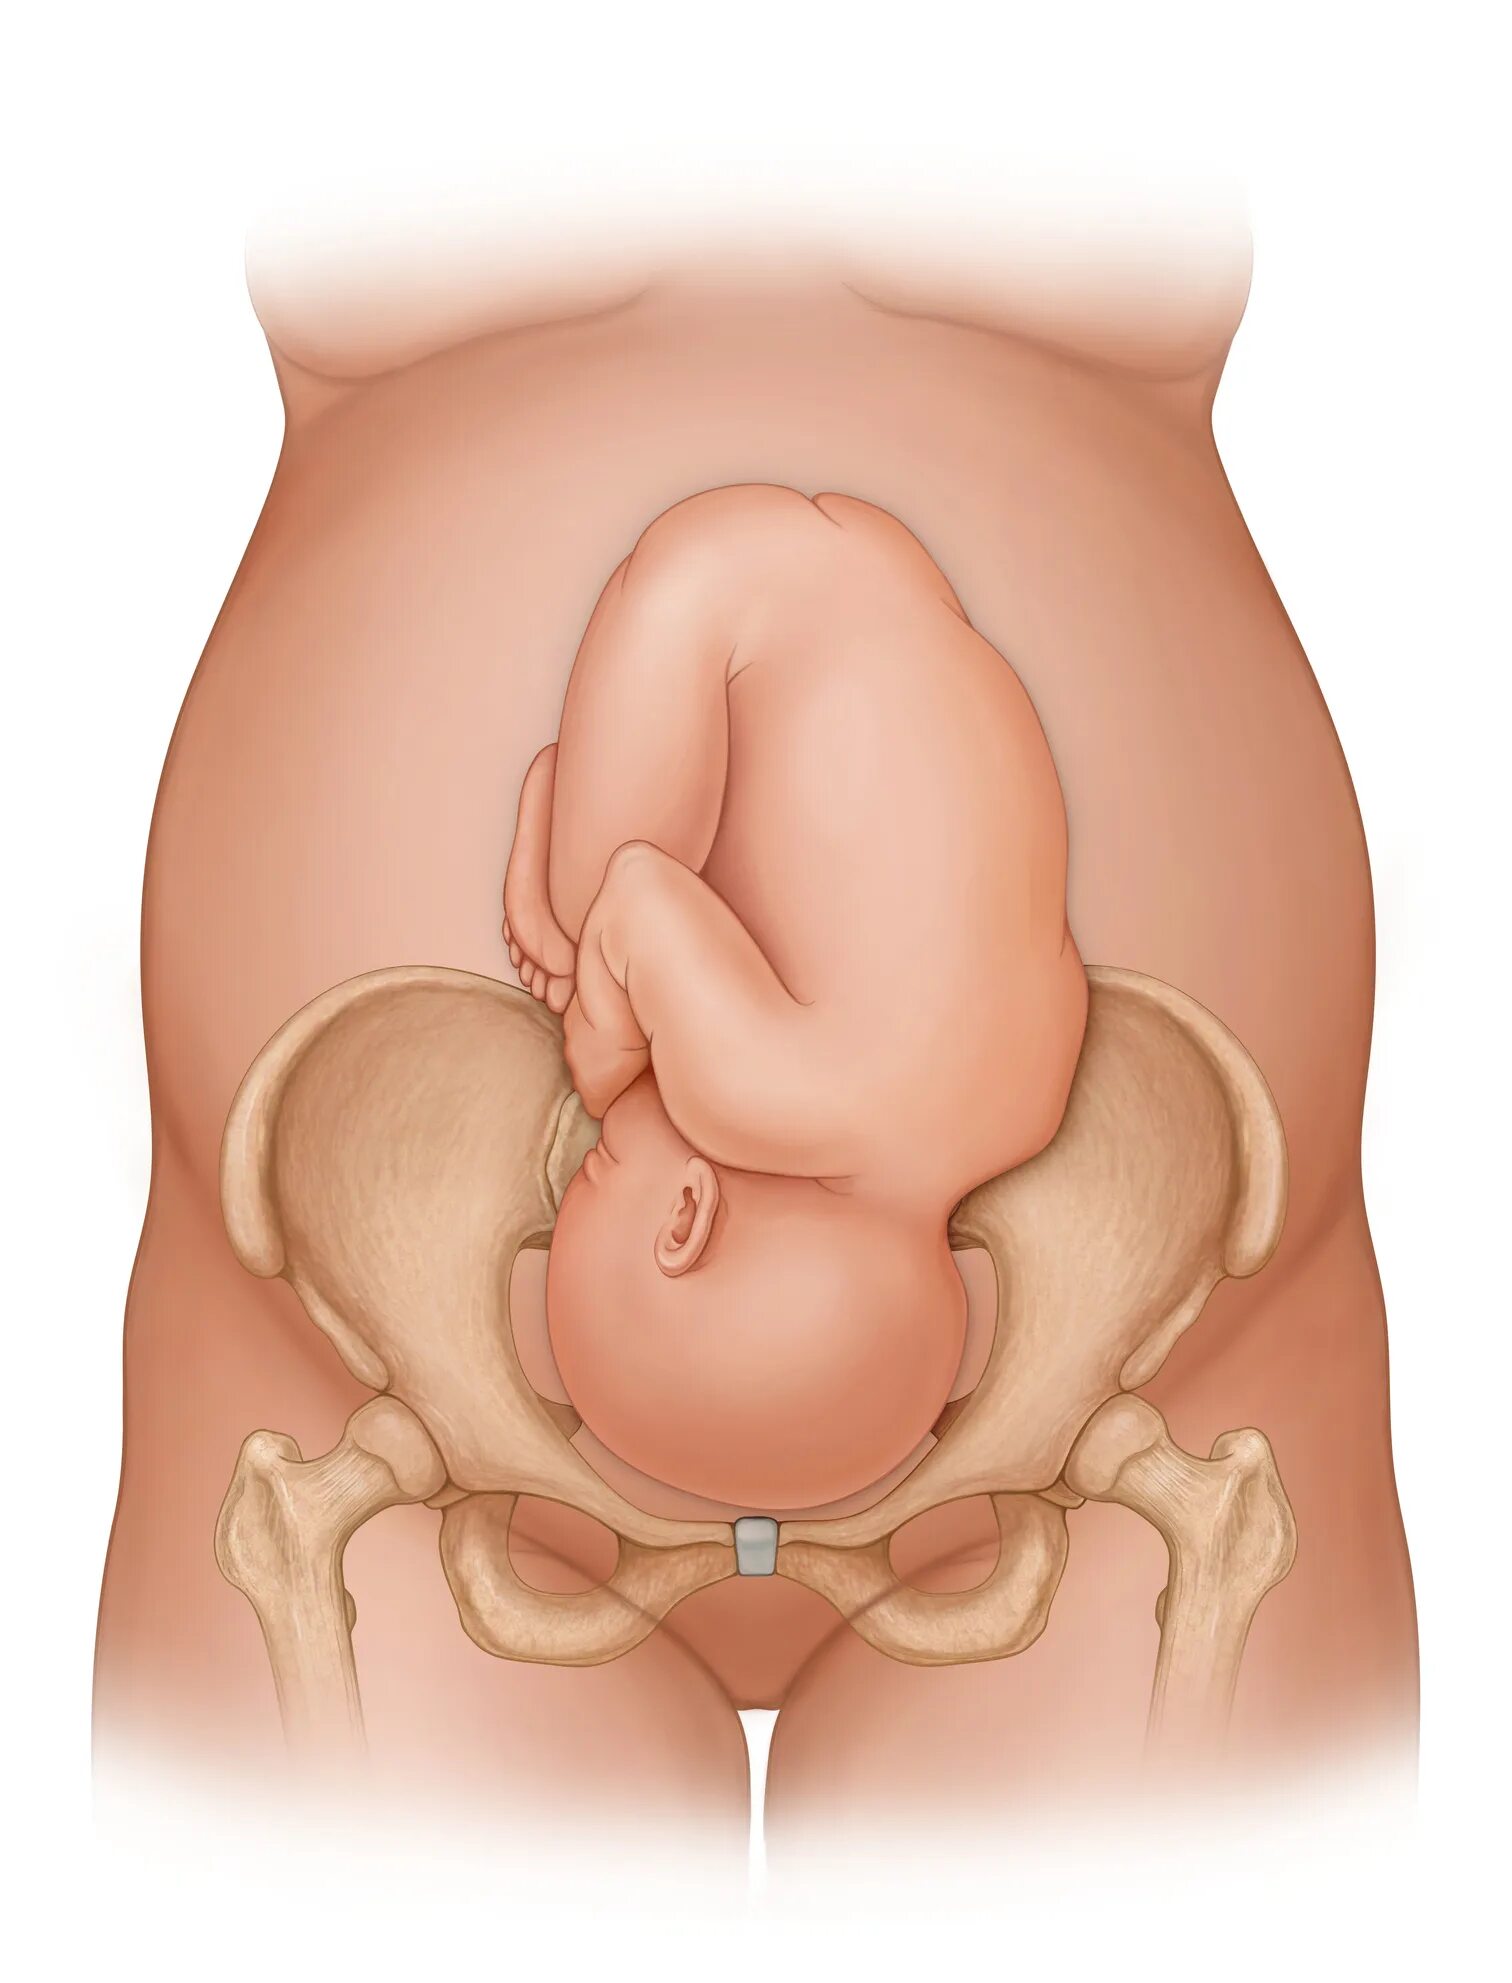 Лобковые кости при беременности. Расширение таза при родах. Расширение таза при беременности. Тазовые кости при родах.